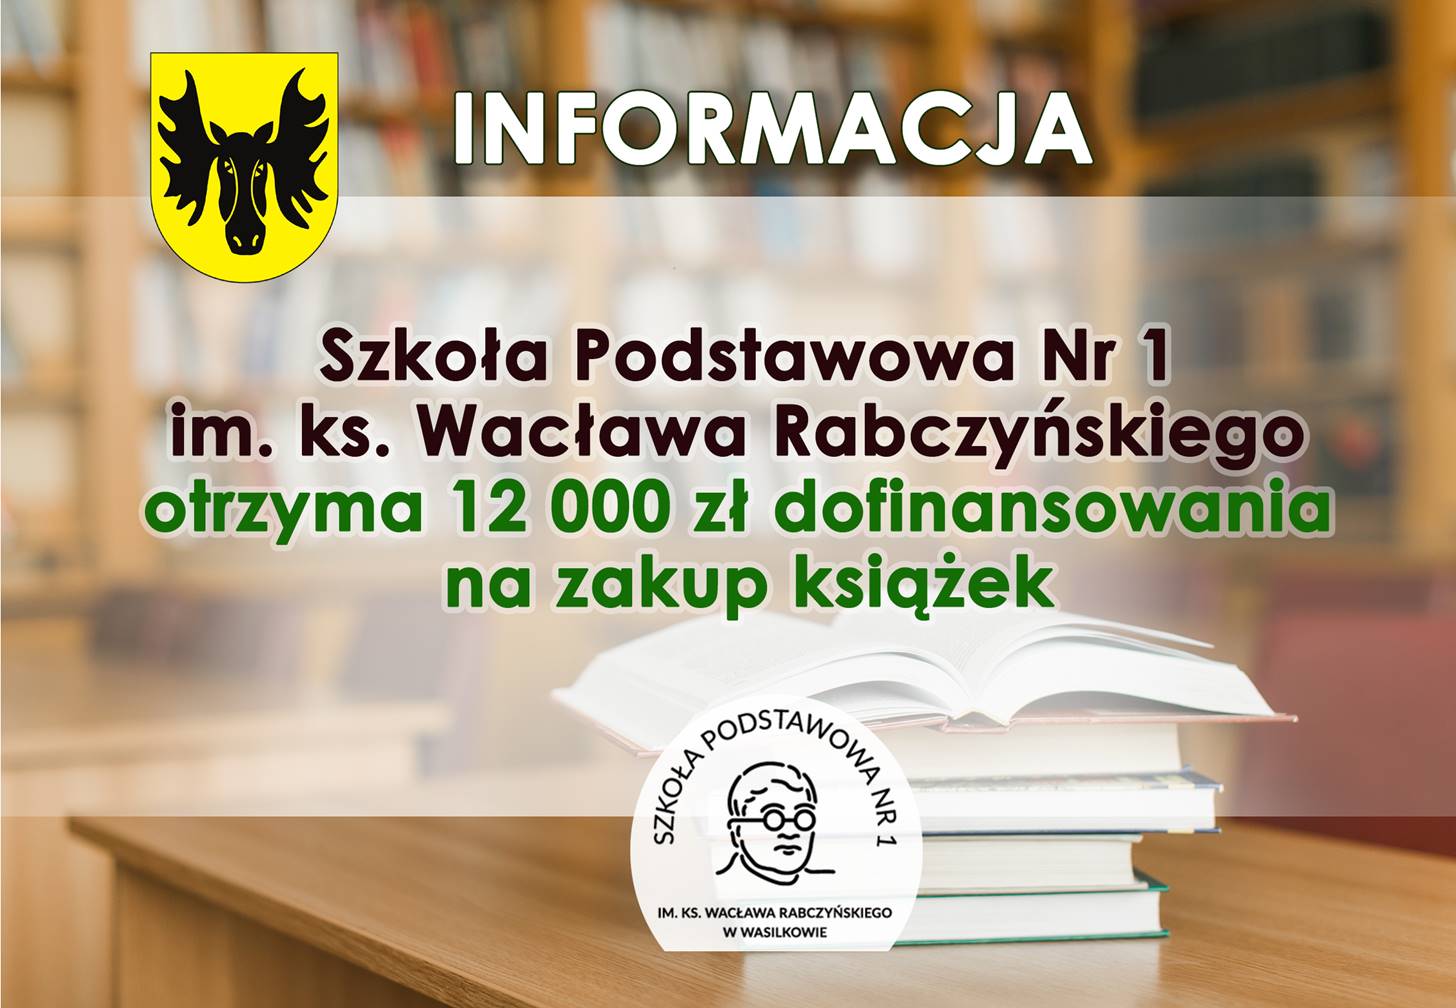 Szkoła Podstawowa Nr 1 im. ks. Wacława Rabczyńskiego otrzyma 12 000 zł dofinansowania na zakup książek